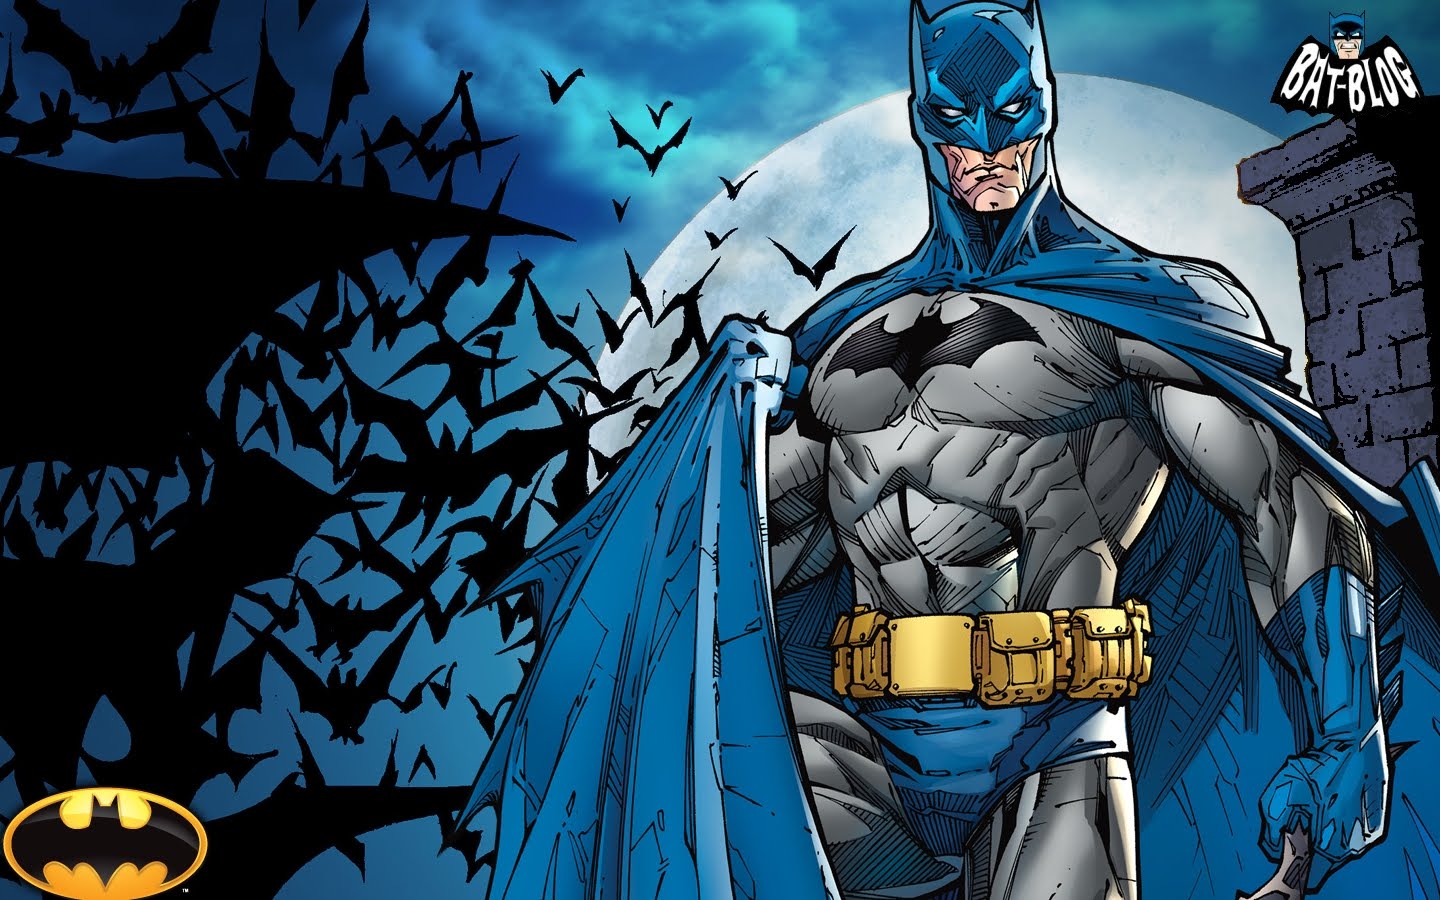 Người hâm mộ Batman, có thể bạn muốn máy tính của mình trông giống như một trang trại Gotham City? Những bức ảnh nền desktop mang chủ đề Batman chắc chắn sẽ giúp bạn thể hiện niềm đam mê với siêu anh hùng đến với mọi người. Xem hình ảnh liên quan để tìm thấy lựa chọn hình ảnh đẹp nhất cho bộ sưu tập của bạn!